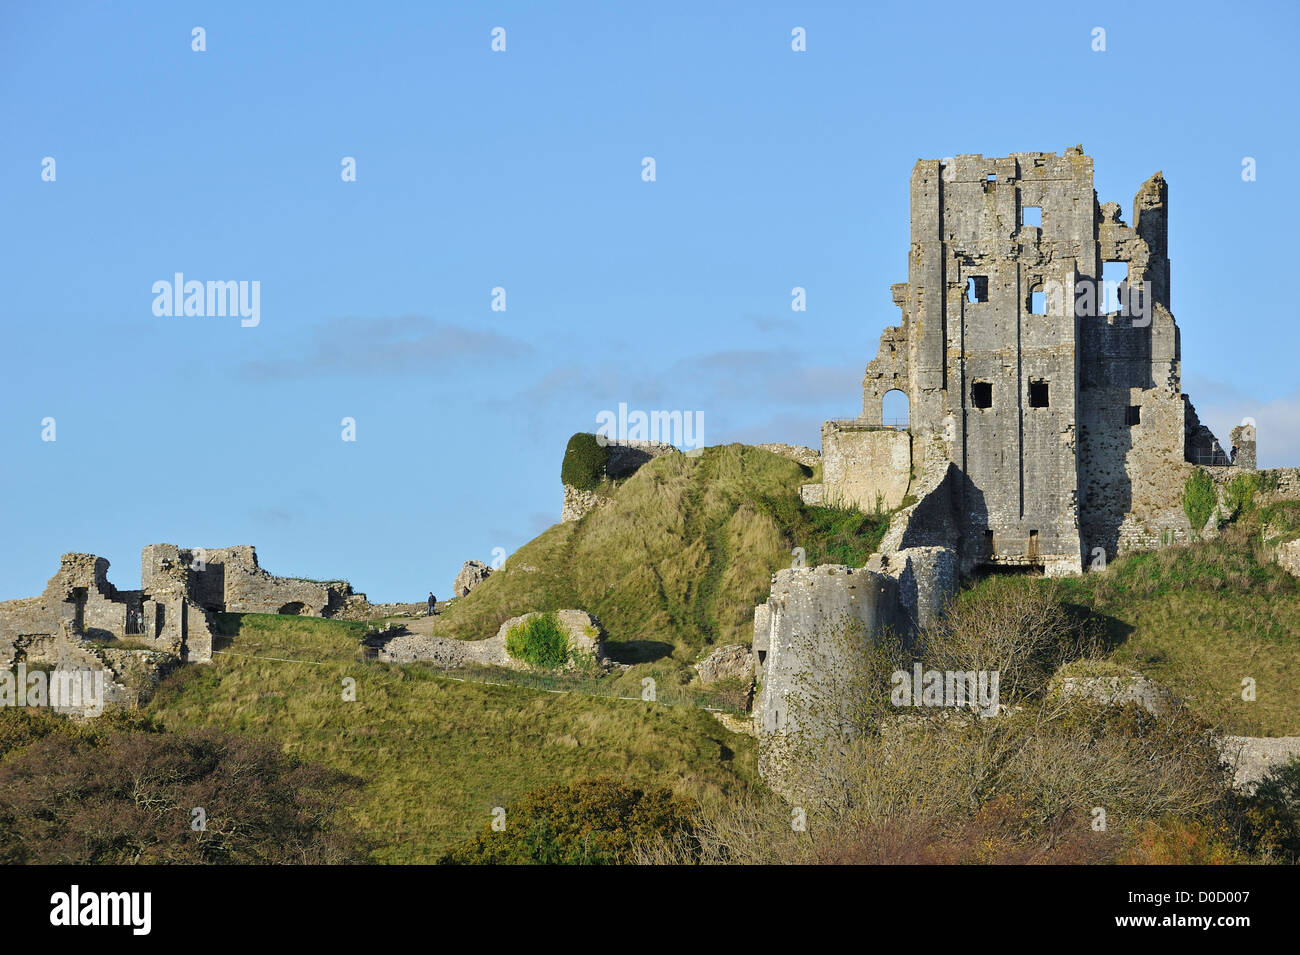 Ruines du château de Corfe médiévale sur l'île de Purbeck le long de la côte jurassique du Dorset, dans le sud de l'Angleterre, Royaume-Uni Banque D'Images